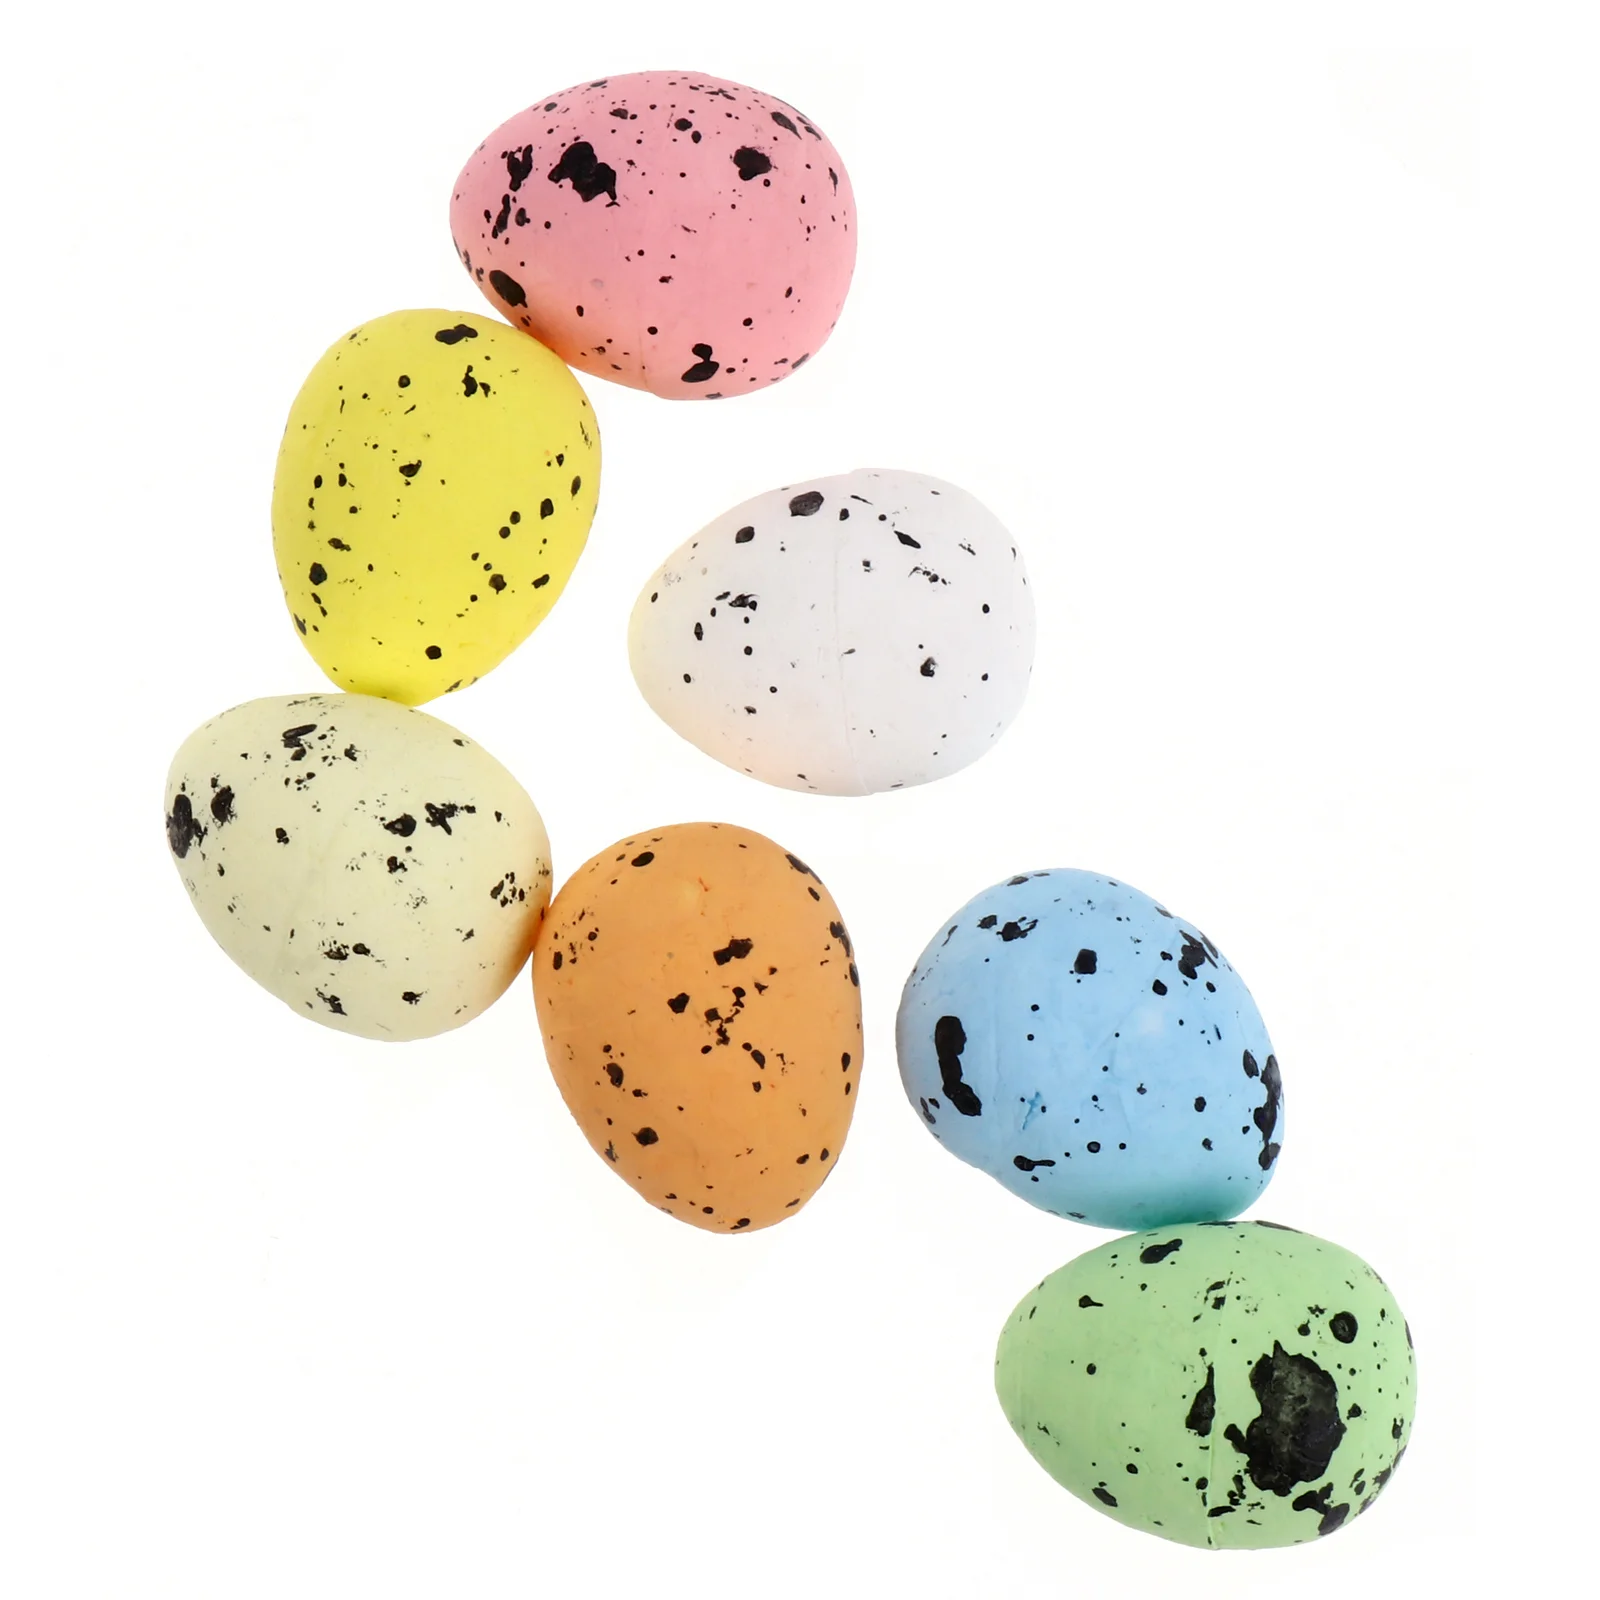 

100 Pcs Bird Nest Egg Bulk Toys Kids DIY Egg Filler Hand Painted Eggs Foam DIY Easter Eggs Toddler Simulation Easter Eggs